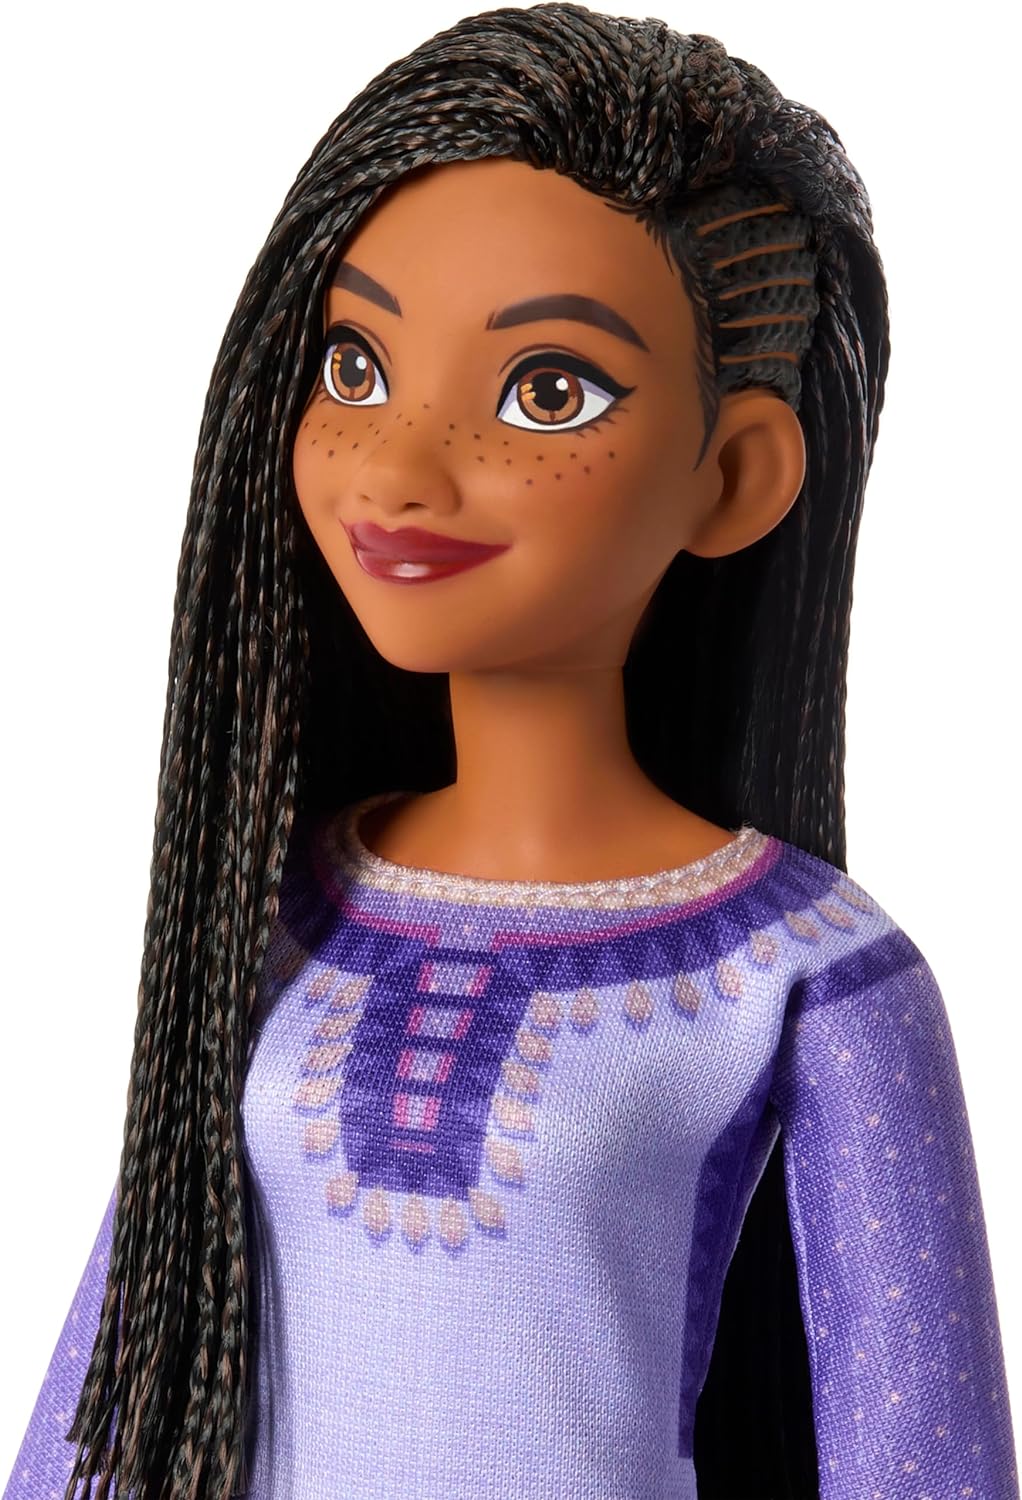 Poupée Asha chantante - Disney Wish Mattel : King Jouet, Barbie et